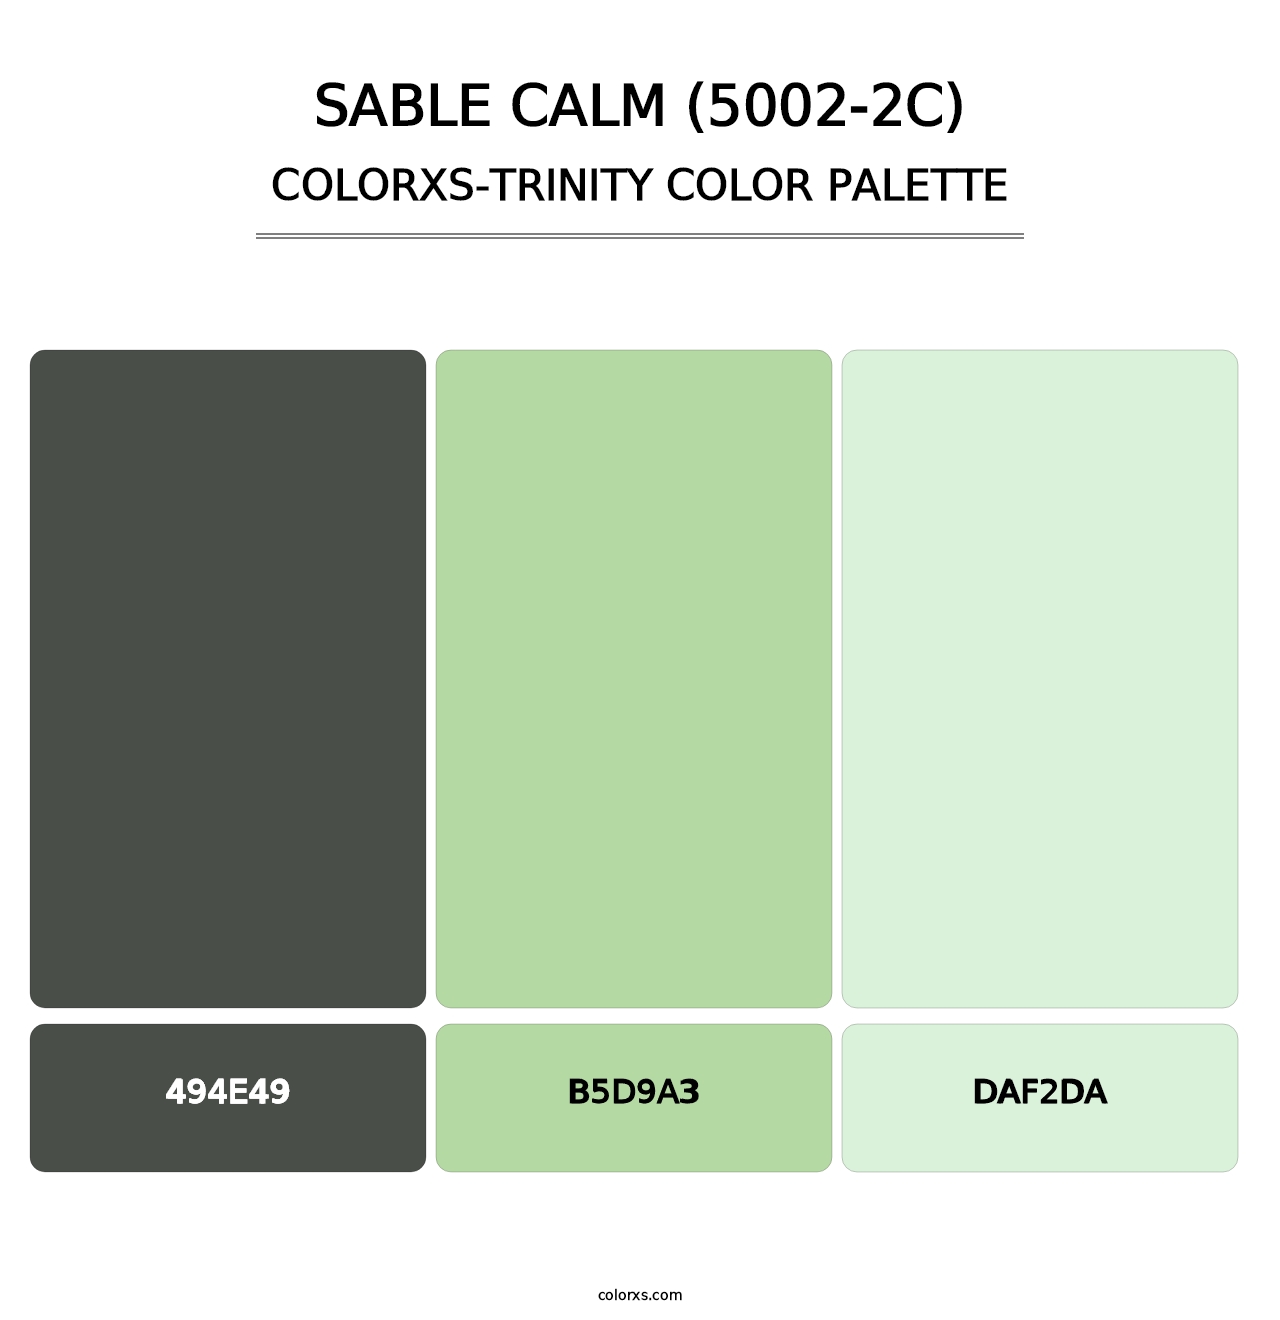 Sable Calm (5002-2C) - Colorxs Trinity Palette